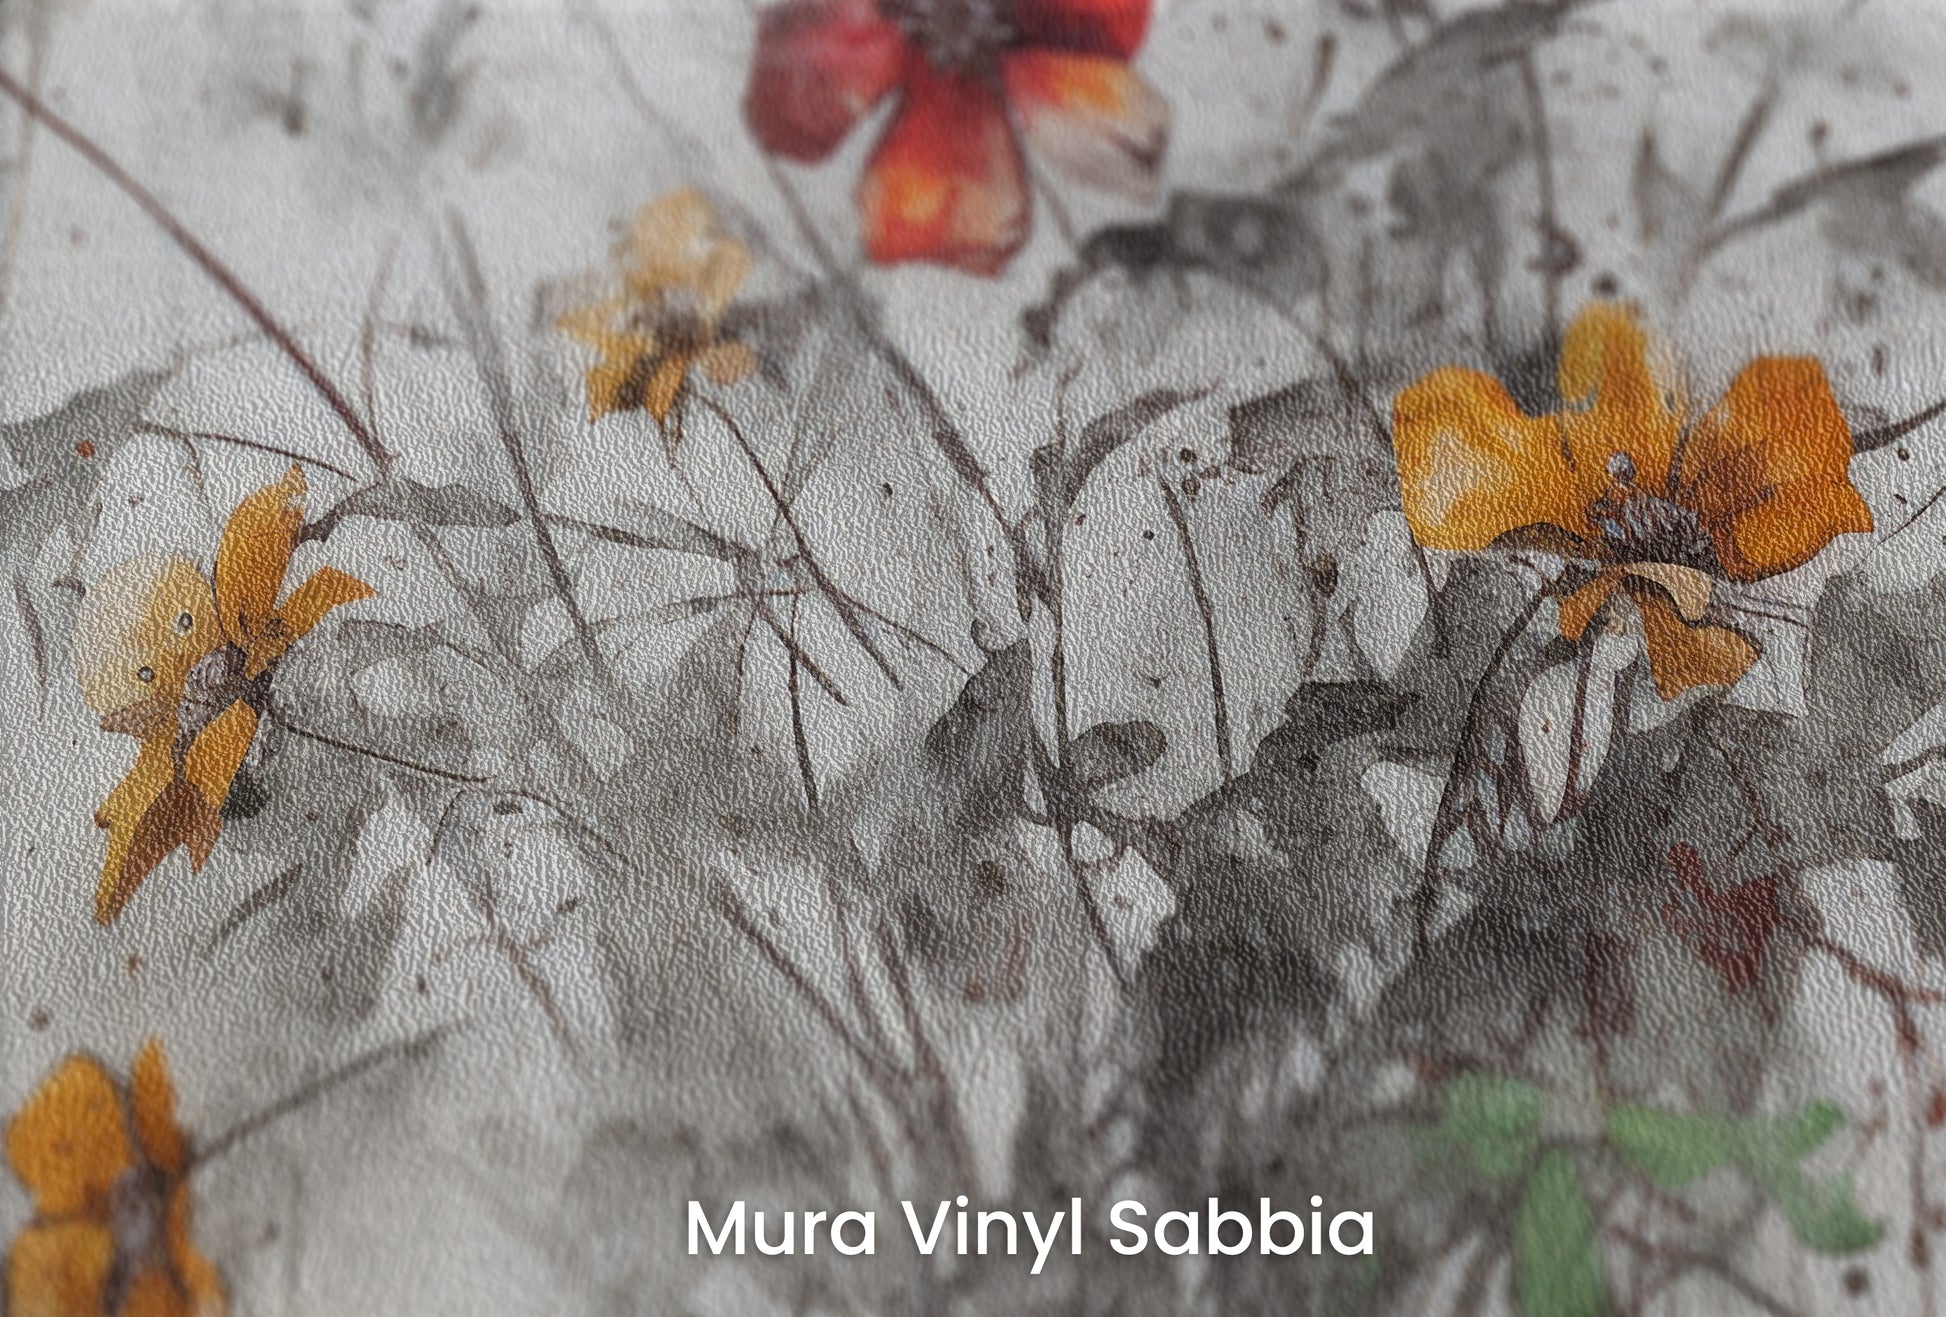 Zbliżenie na artystyczną fototapetę o nazwie RUSTIC BLOOMS OF VITALITY na podłożu Mura Vinyl Sabbia struktura grubego ziarna piasku.